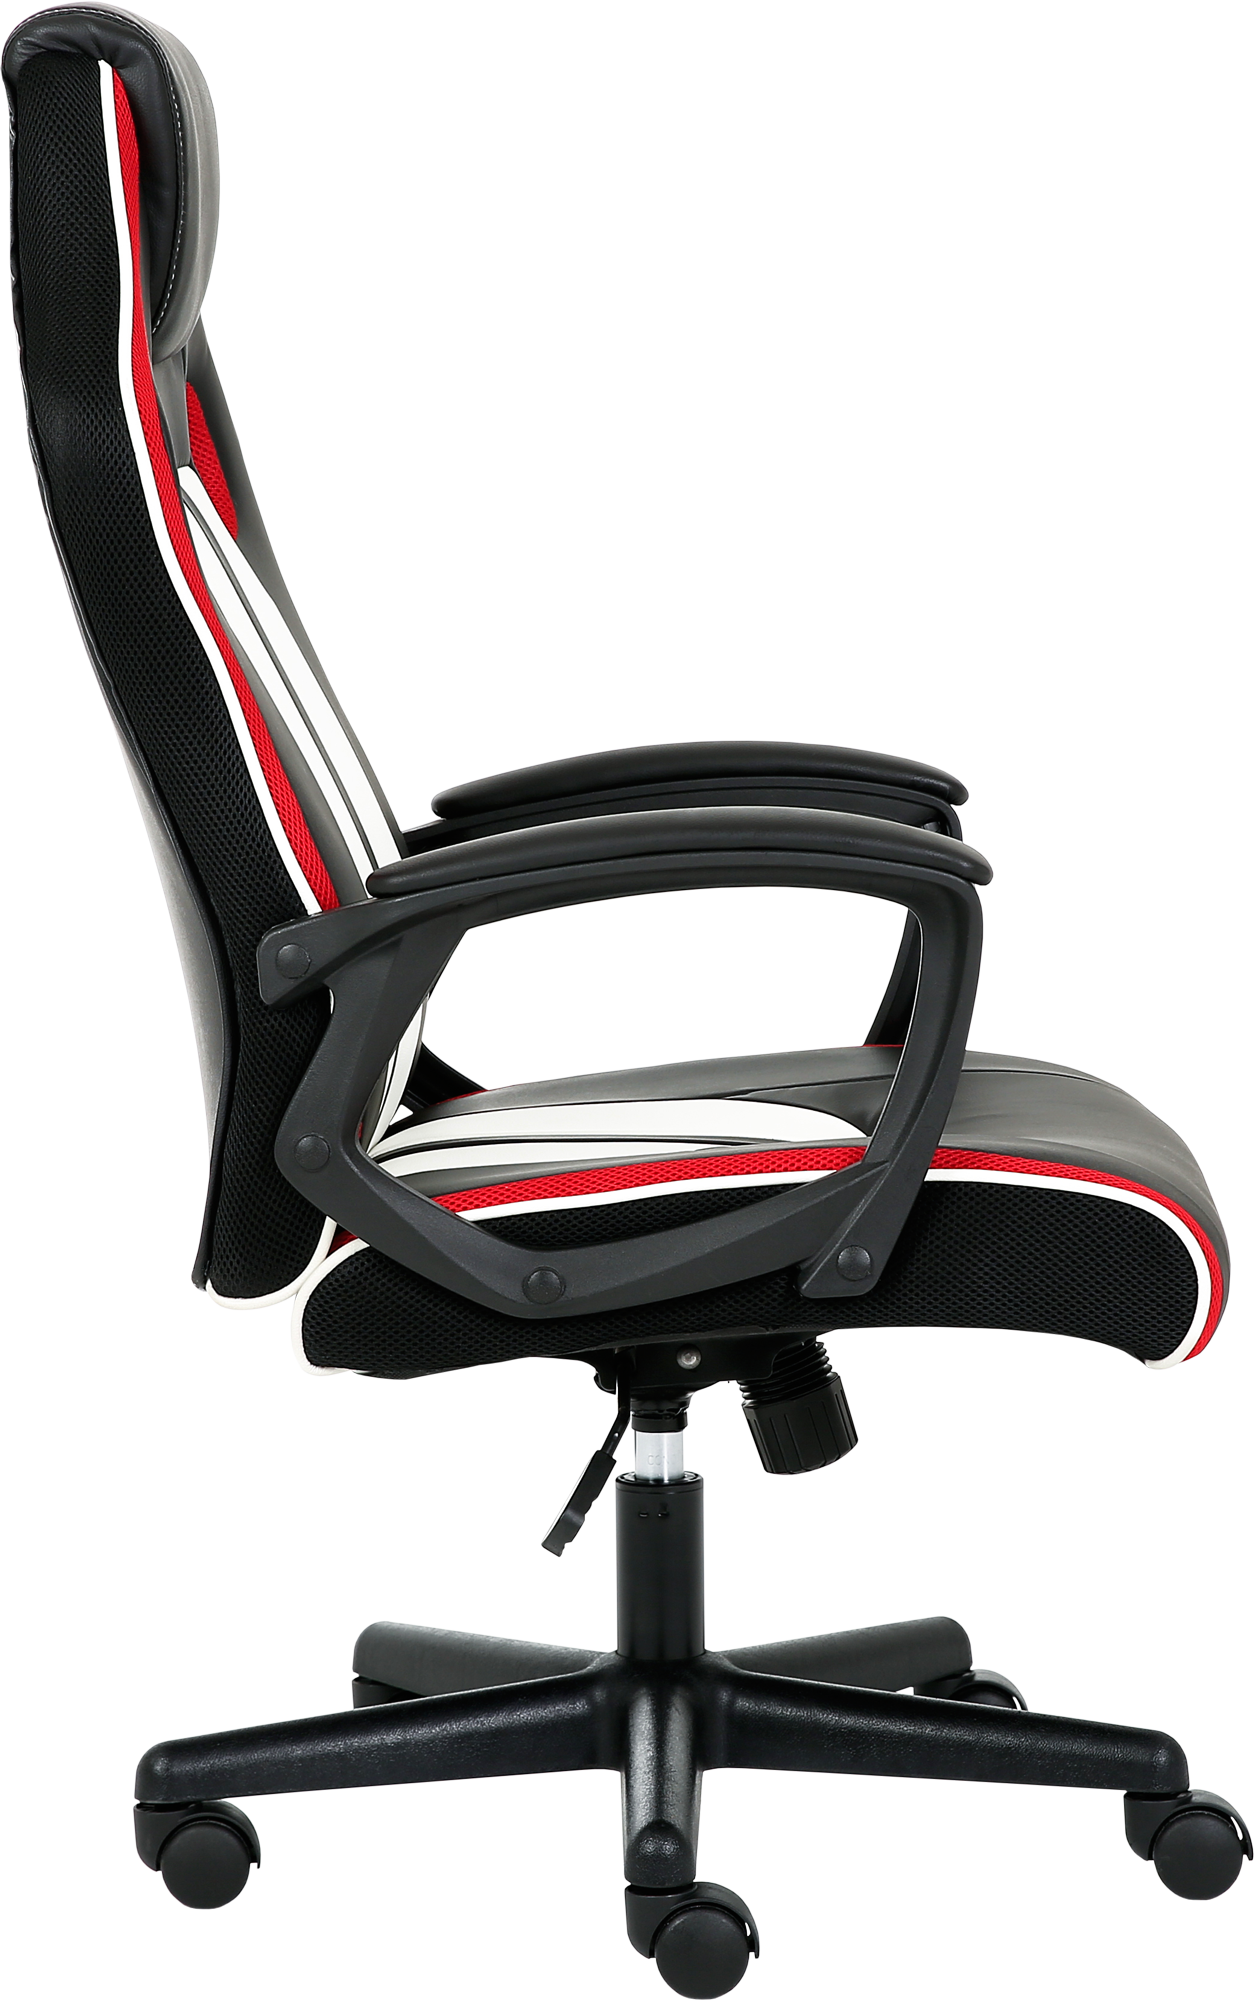 Геймерське крісло GT Racer чорне з білим та червоним (X-2301 Black/White/Red) - фото 3